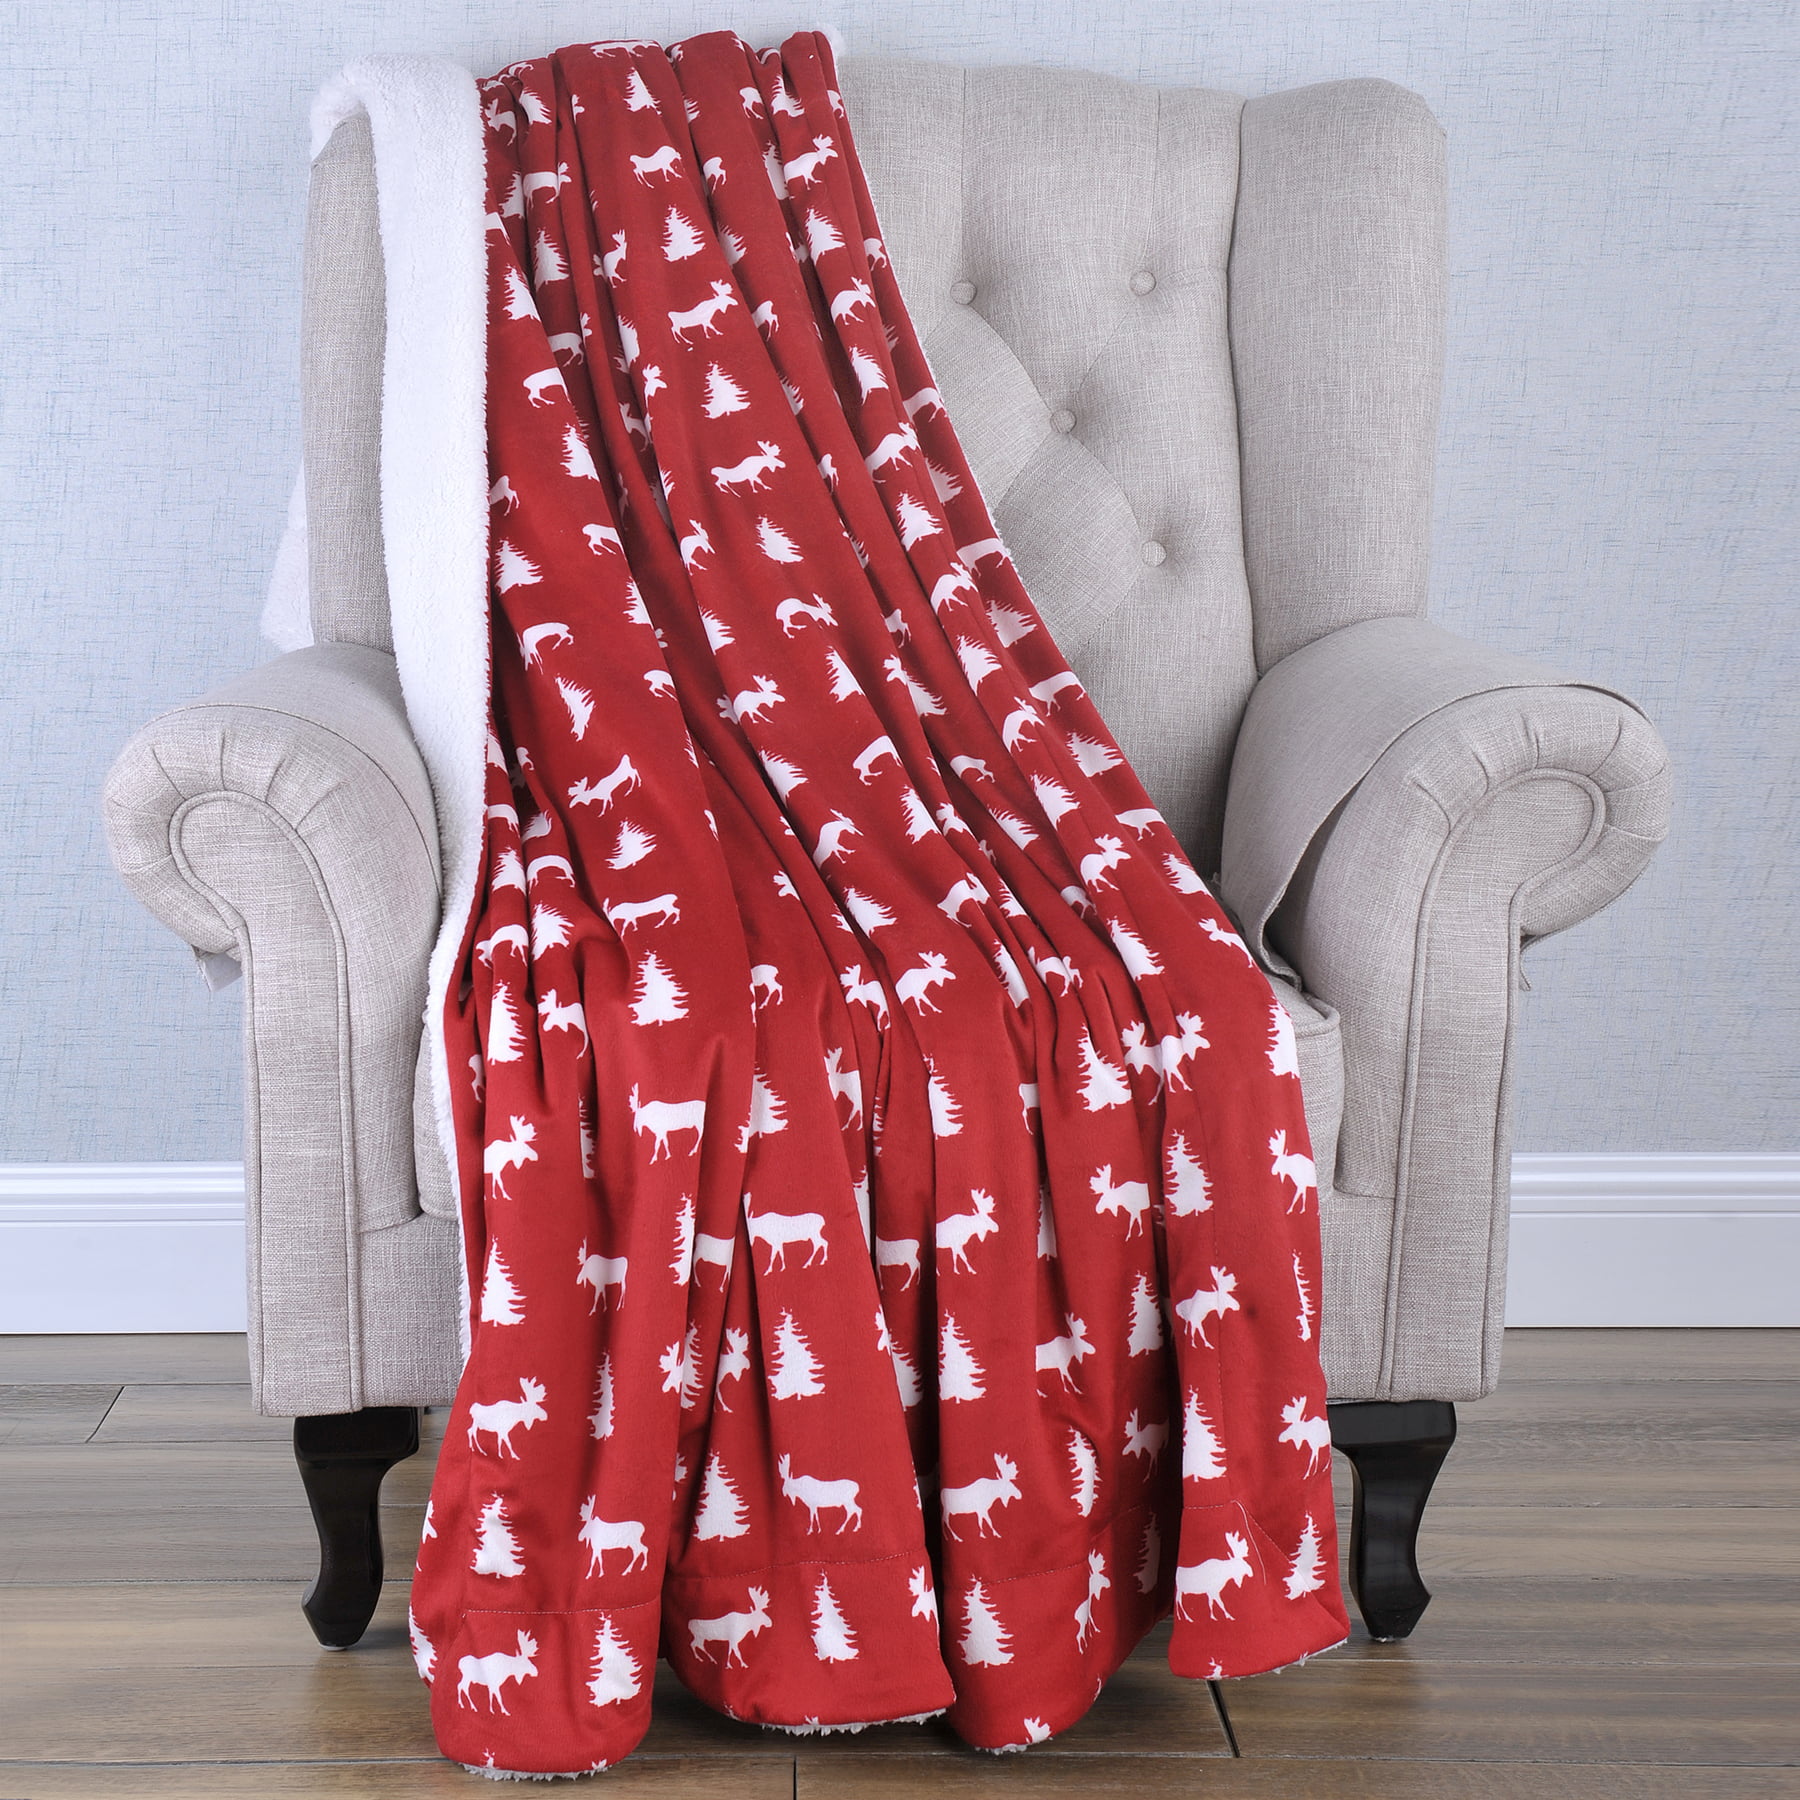 Throw Blanket Christmas Decorations Knitt Pattern Winter Santa Deer Pine Red White Soft Fleece Blanket for Couch 60x50